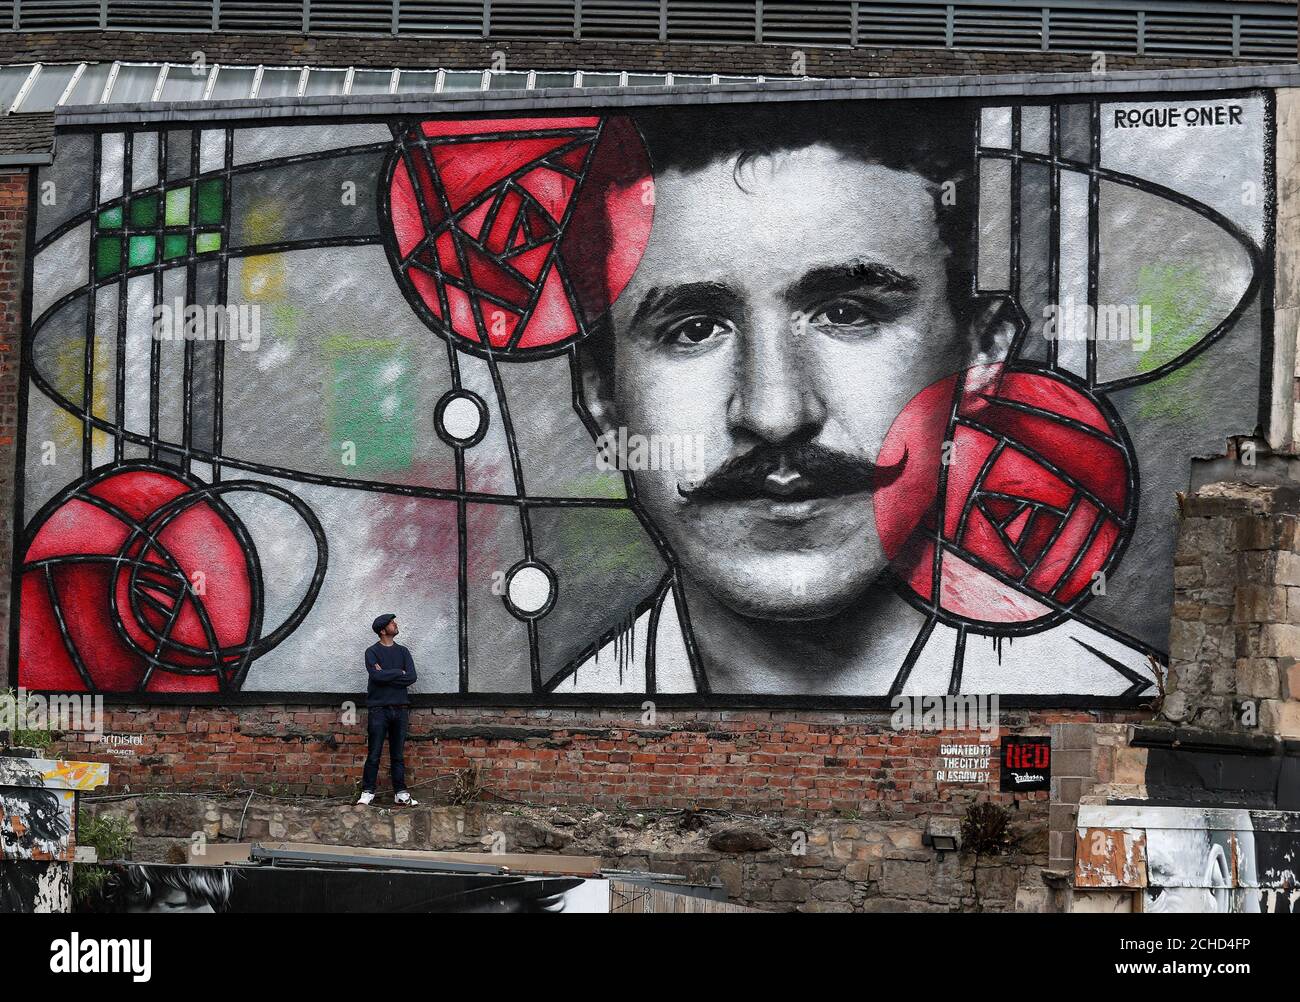 Künstler Bobby McNamara als Rogue bekannt - ein Blick auf sein neuestes Werk, eine riesige street art Wandbild zu Charles Rennie Mackintosh gewidmet auf eine große Wand mit Blick auf den Clutha bar in Glasgow gemalt. Stockfoto